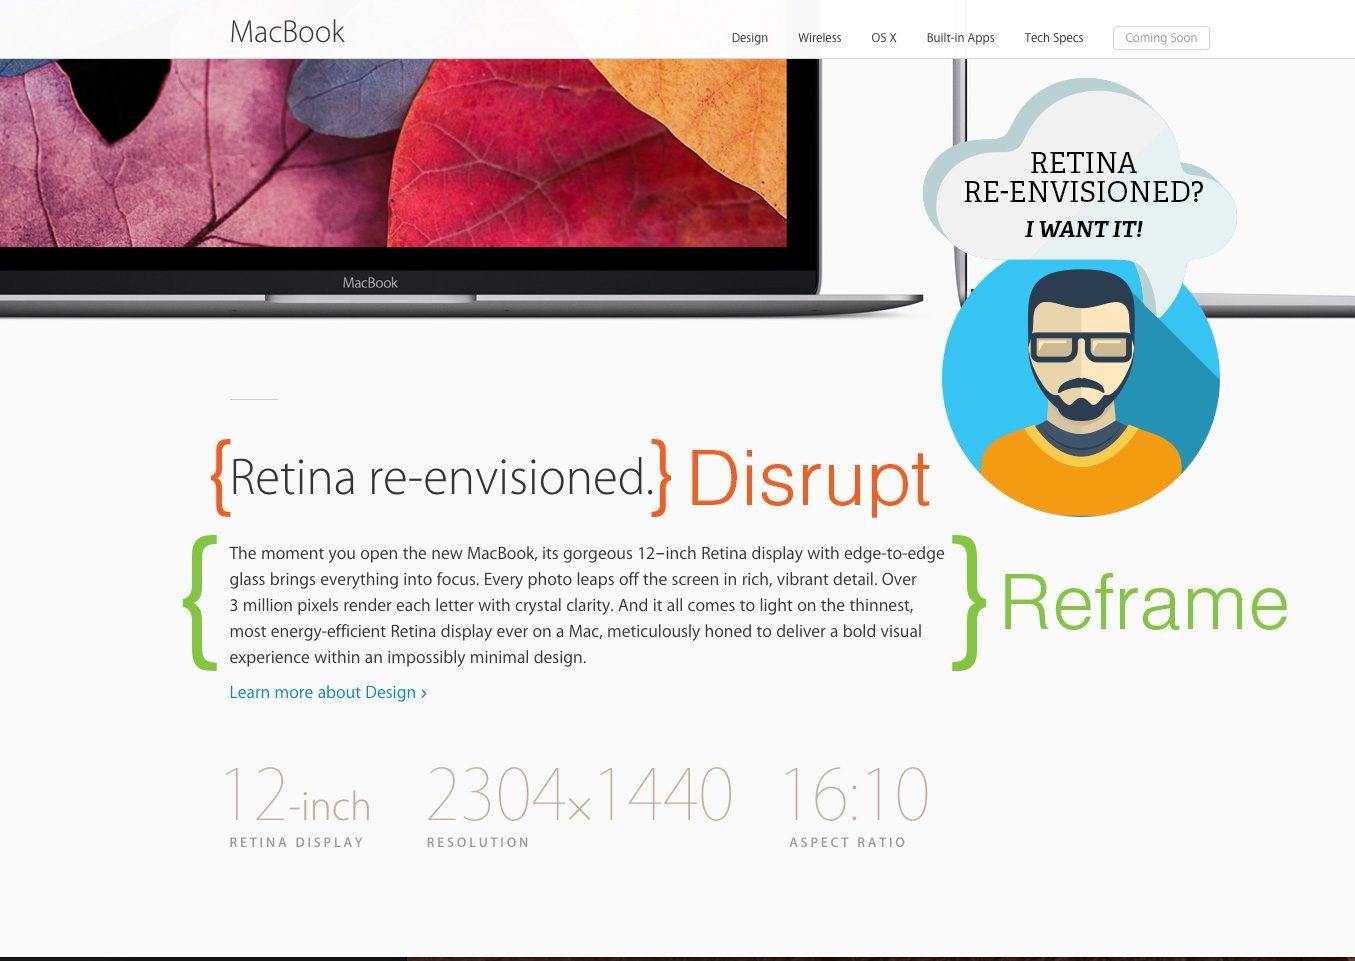 Apple-Disrupt-Reframe